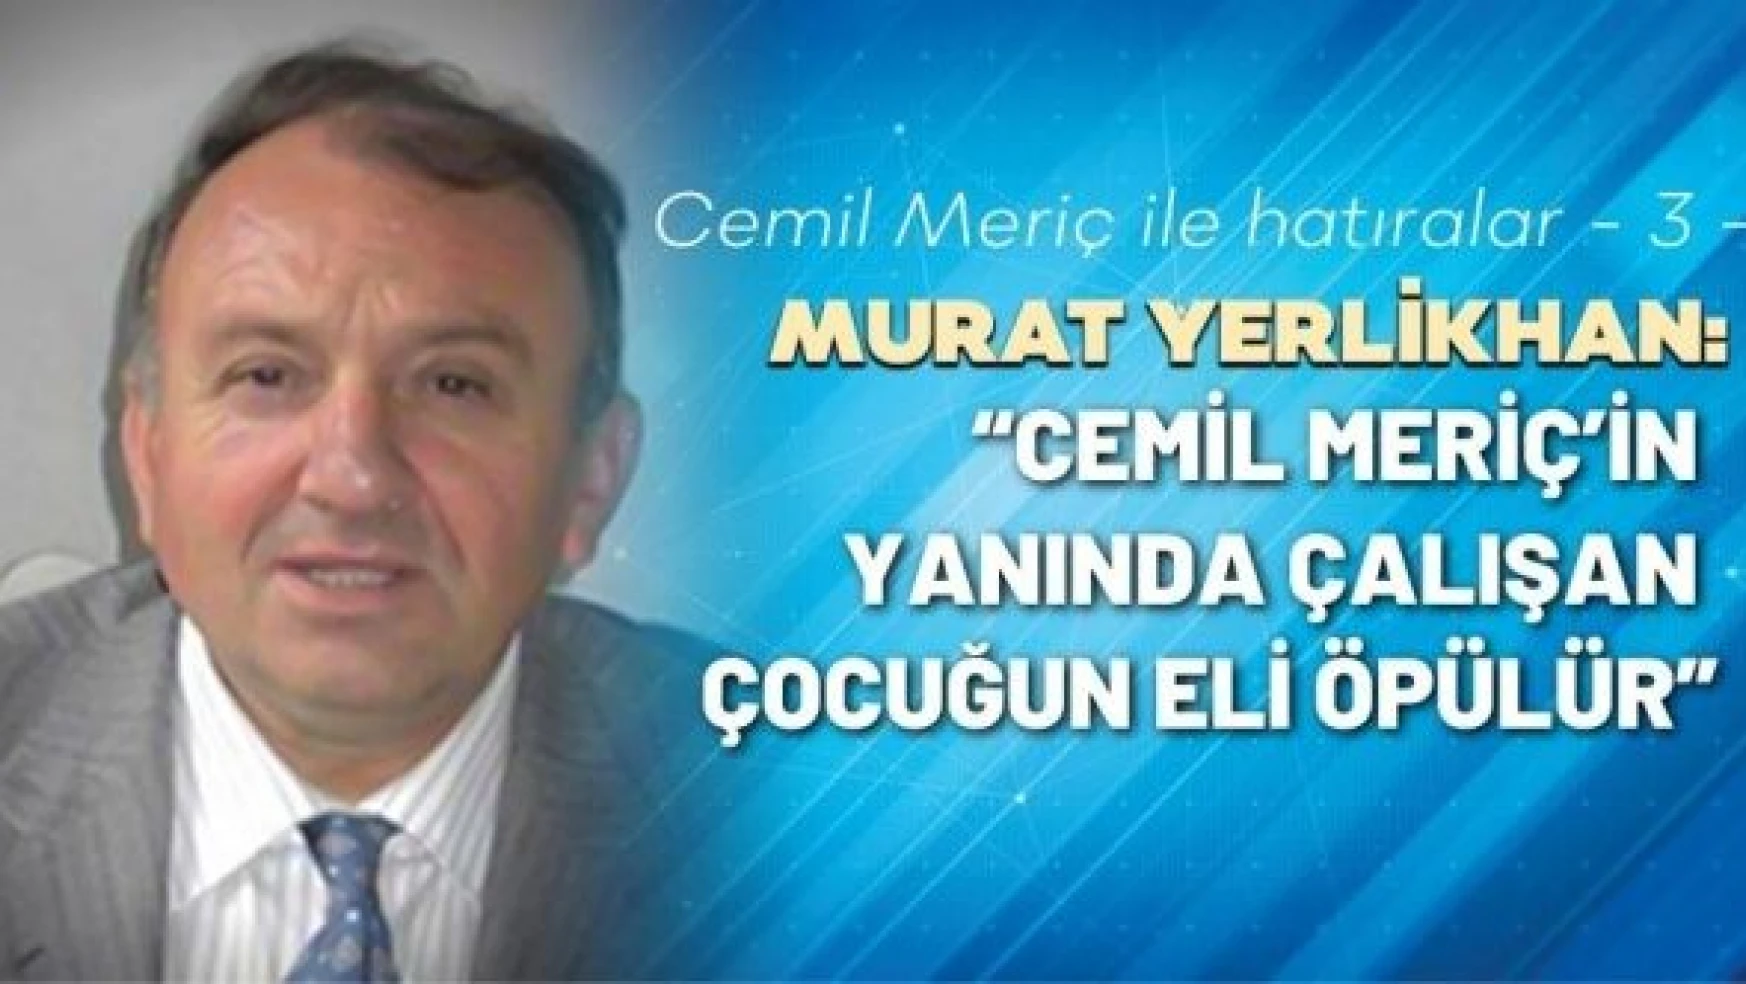 Murat Yerlikhan Cemil Meriç ile hatıralarını yazıyor